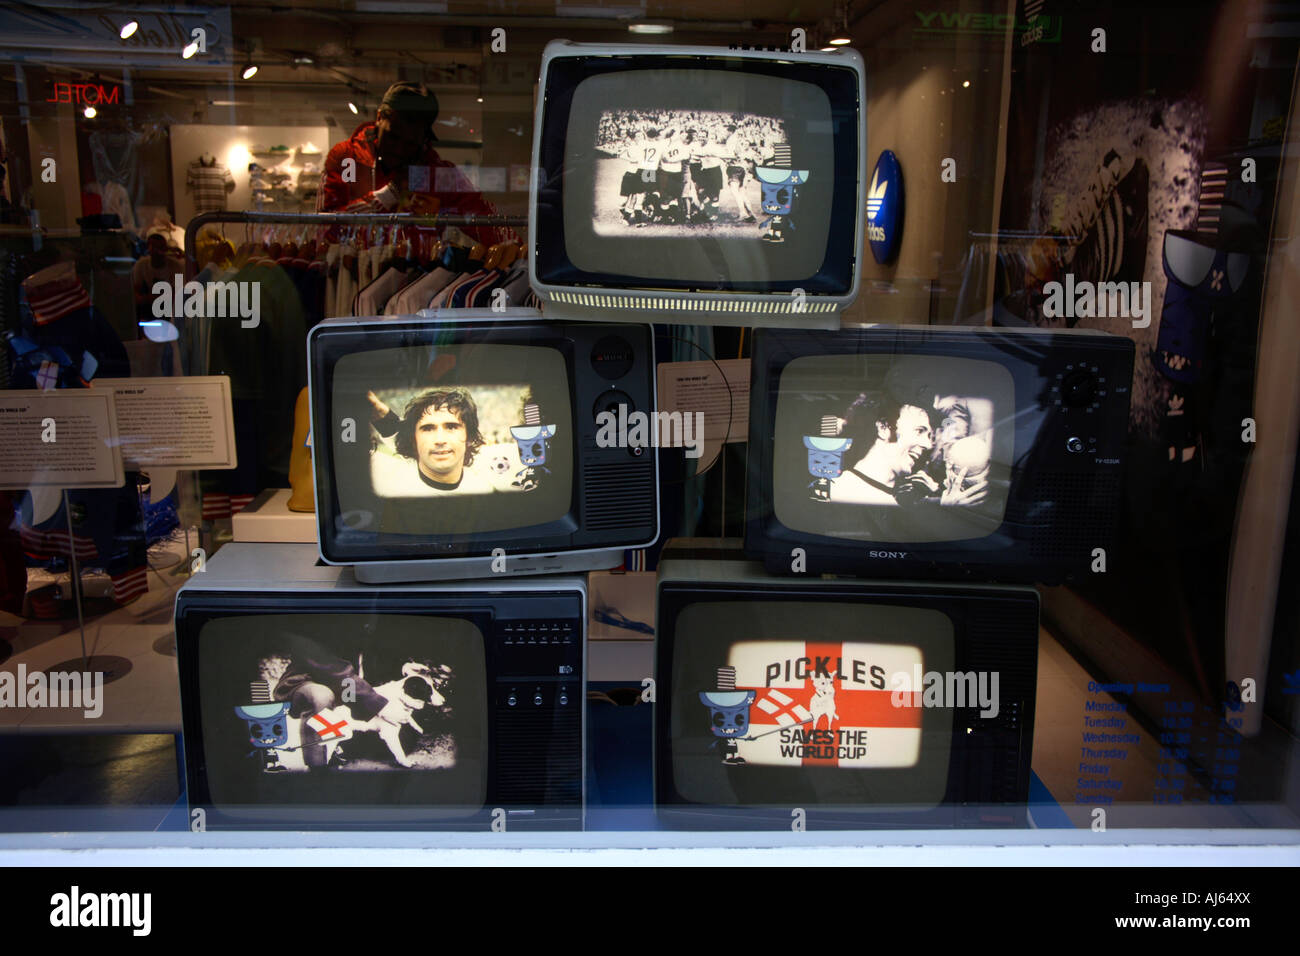 Schermi televisivi all'interno dell'adidas Store, Covent Garden, Londra, la fase finale della Coppa del mondo, 2006 Foto Stock